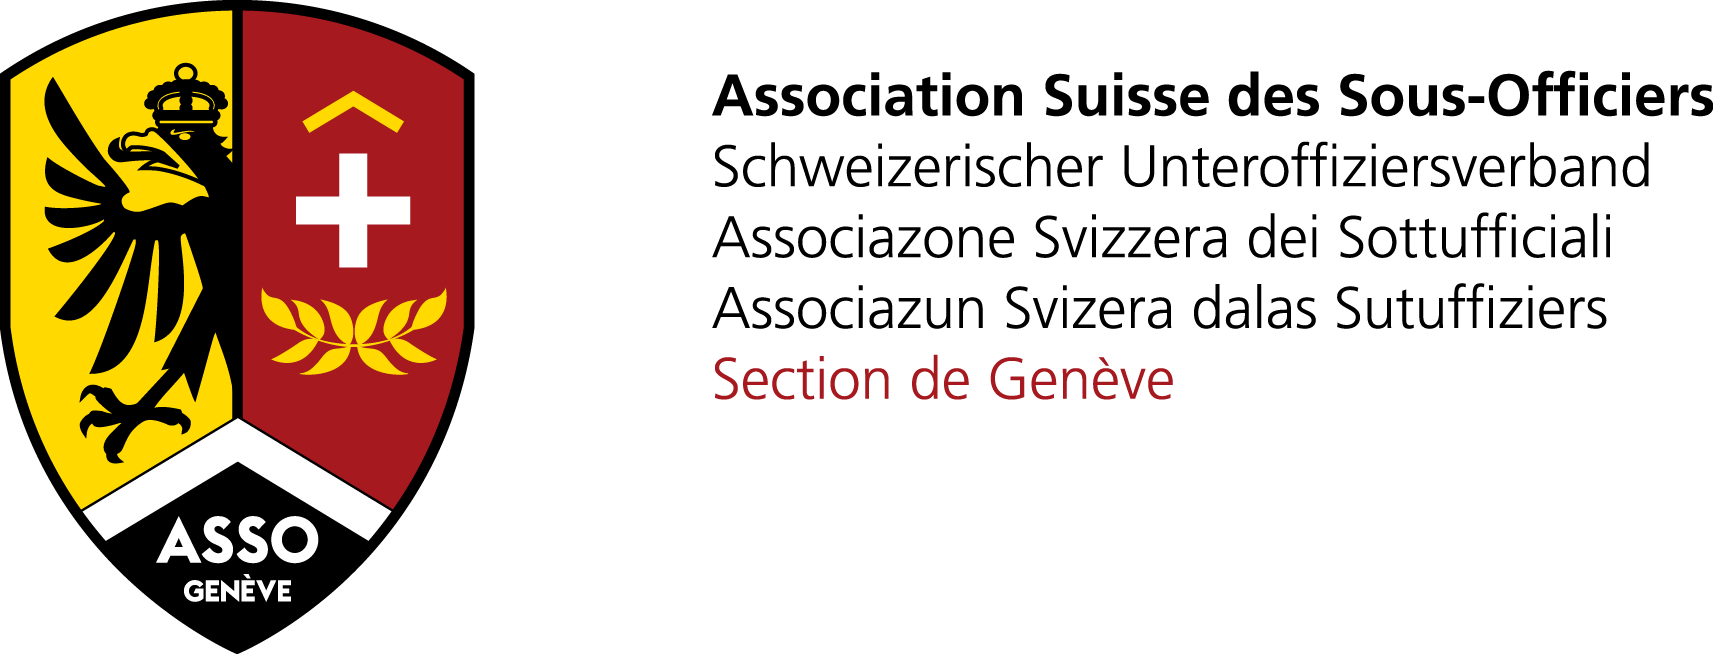 Association Suisse de Sous-officiers, section de Genève